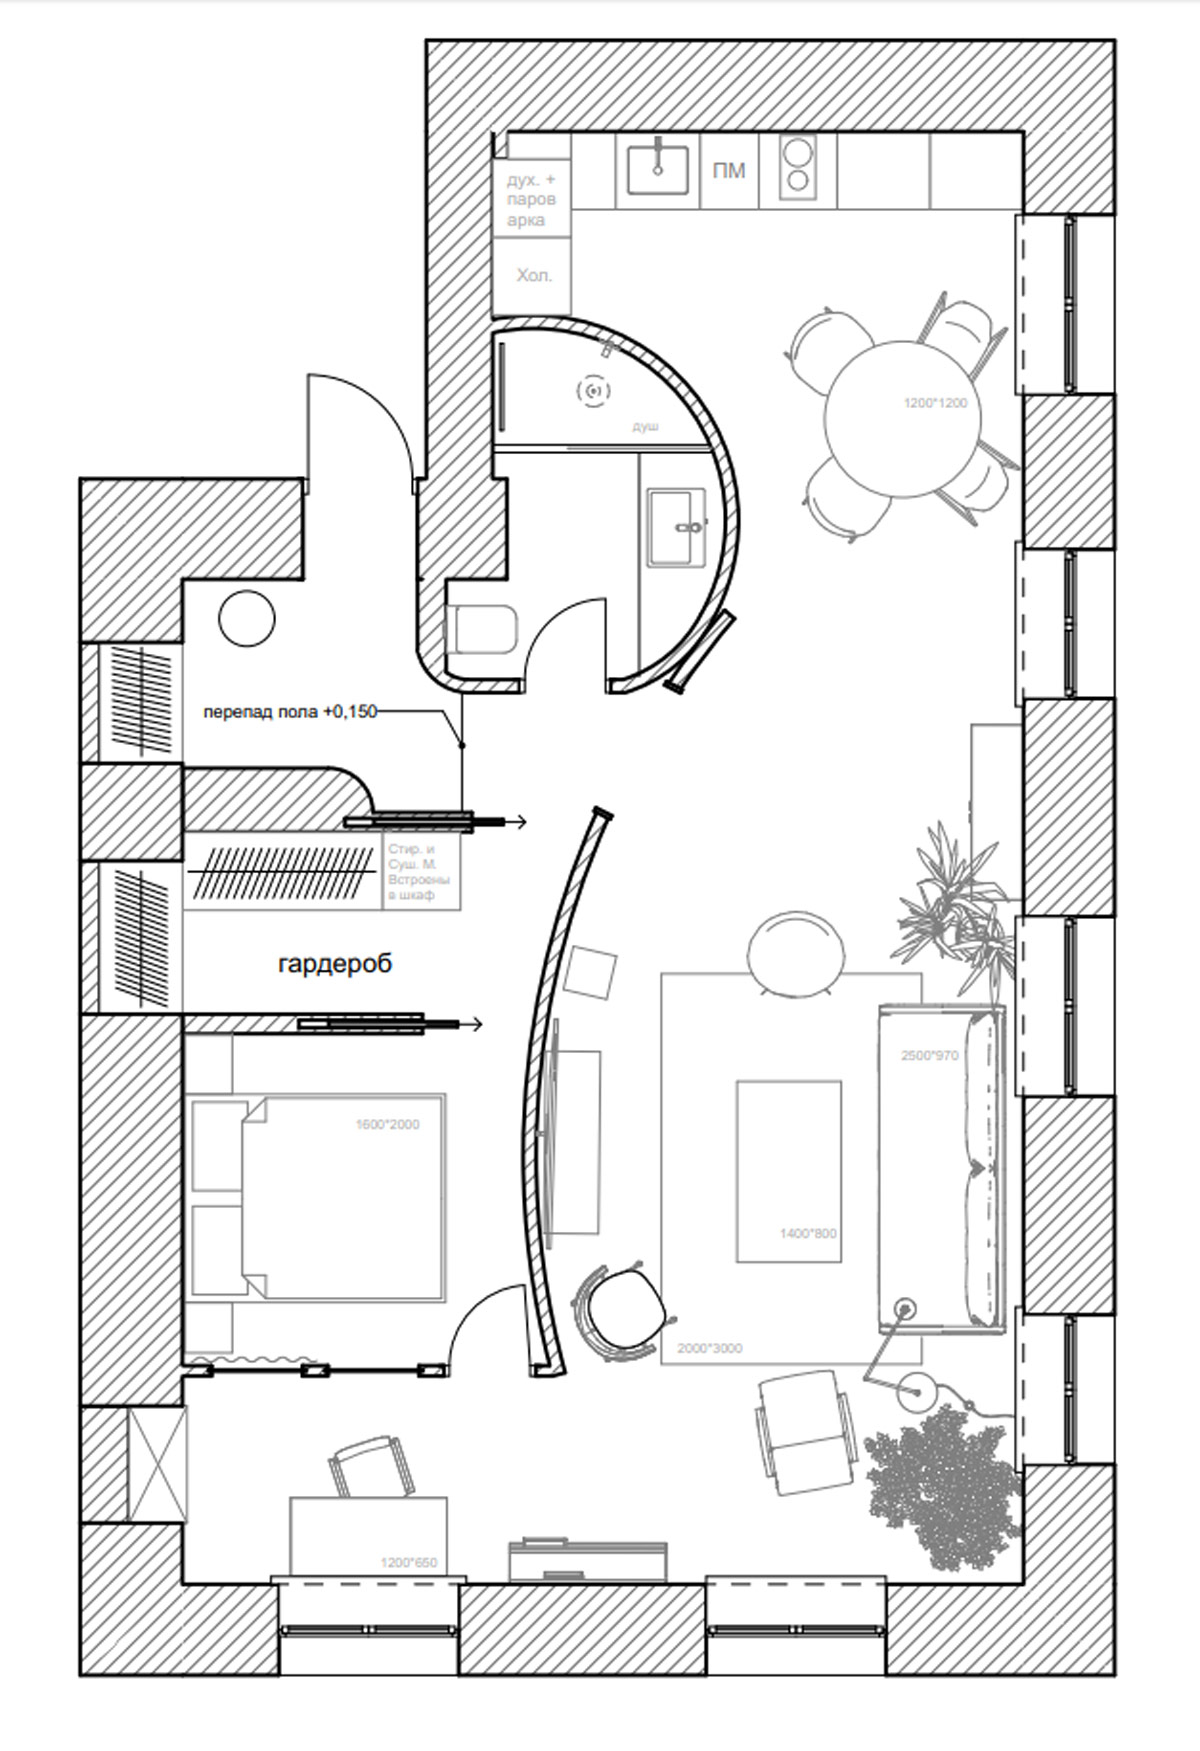 floor-plan-2-600x876.jpg